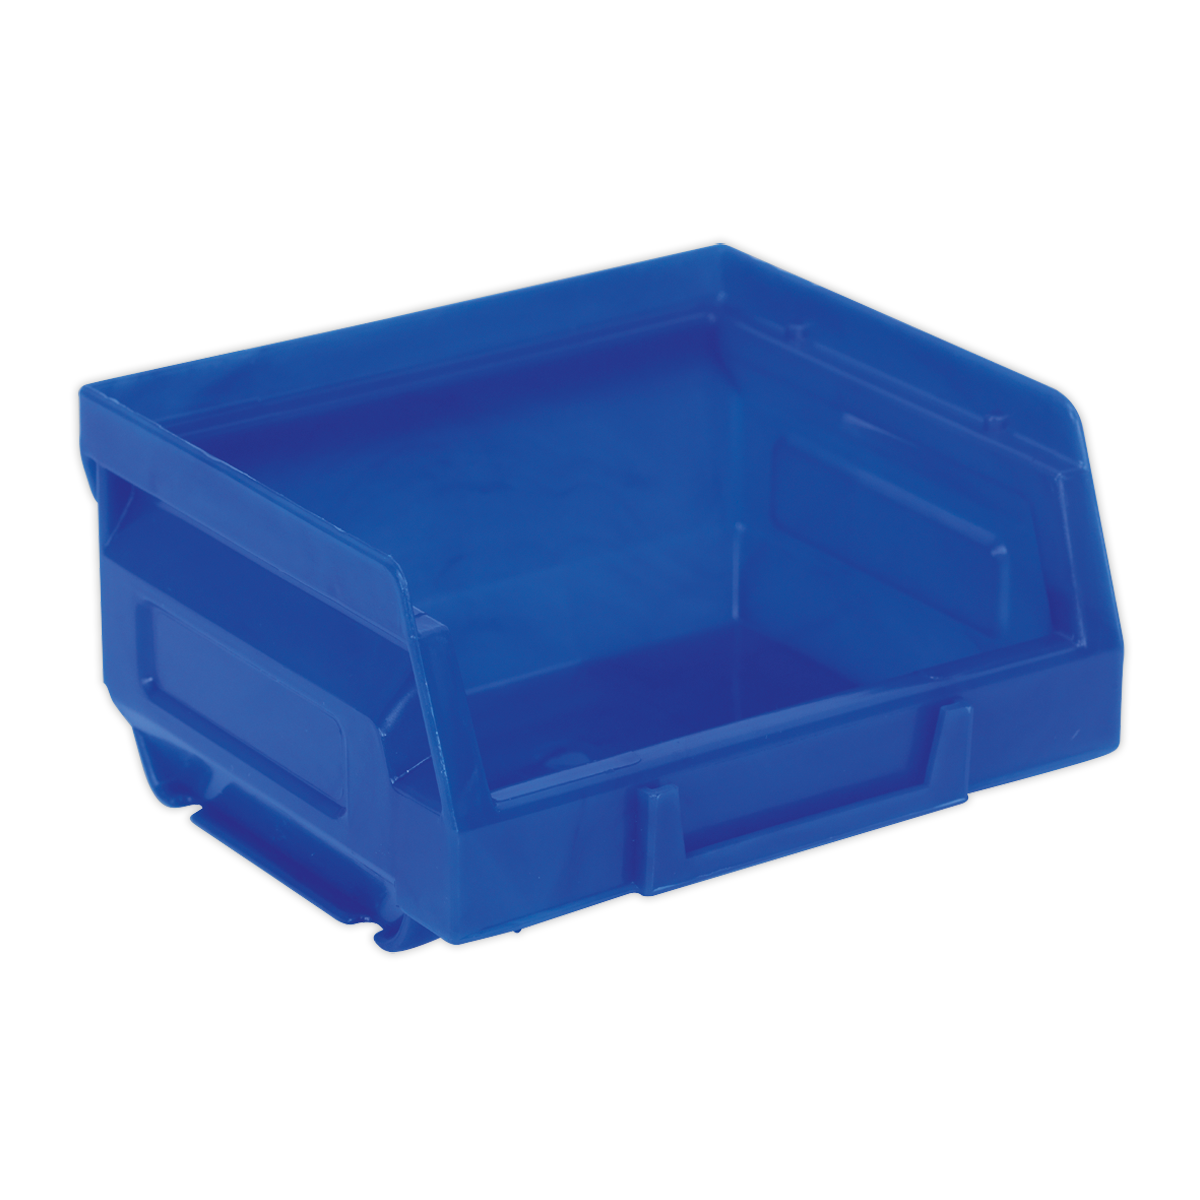 Plastic Storage Bin 105 x 85 x 55mm - Blue Pack of 24